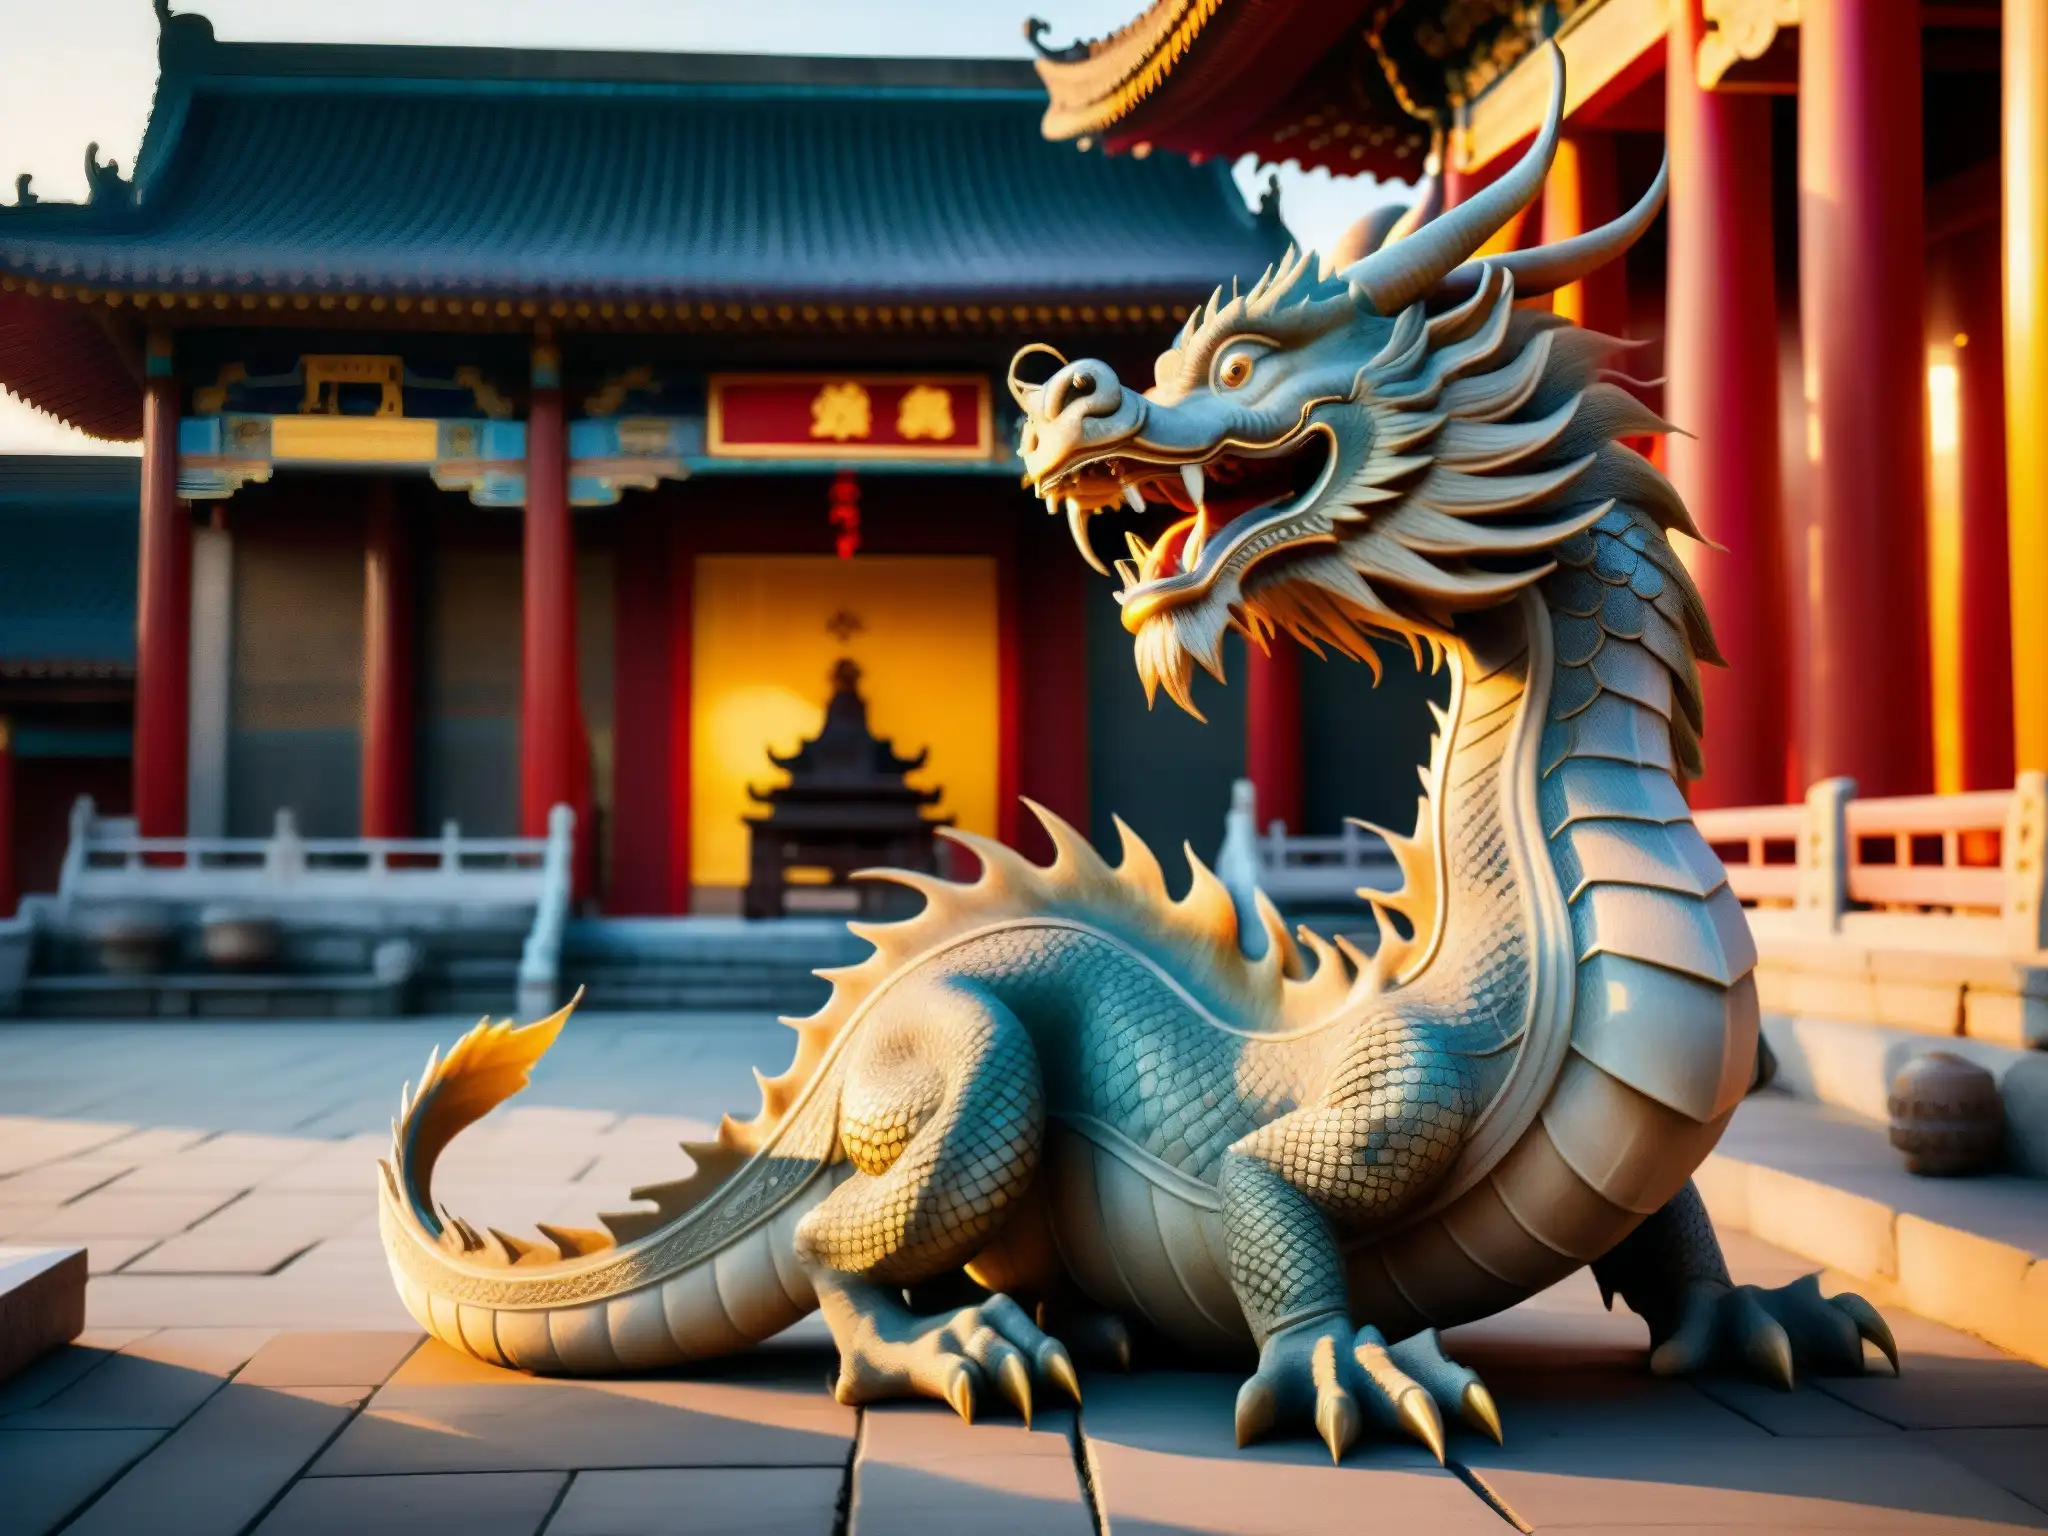 Una estatua viva de dragón en un antiguo templo chino, iluminada por el suave atardecer